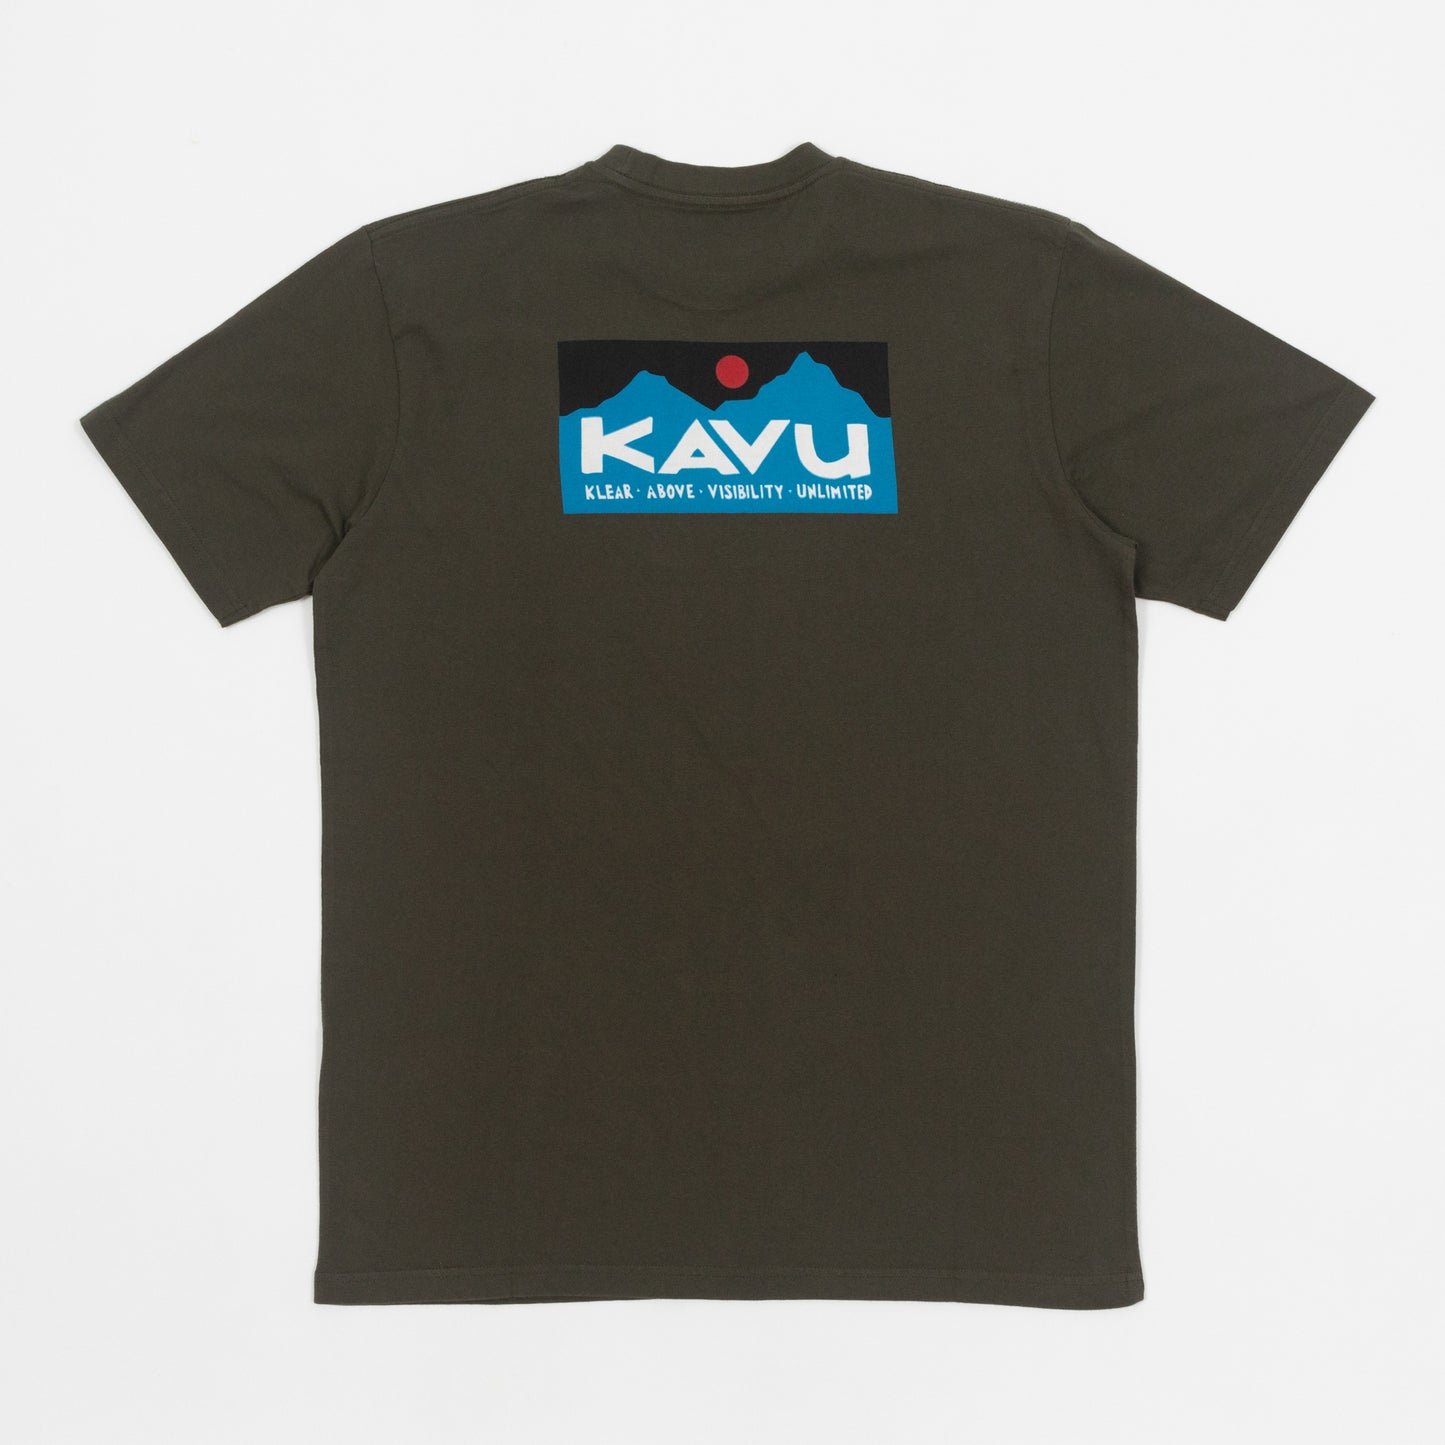 KAVU Klear Above Etch Art T-Shirt in GREEN